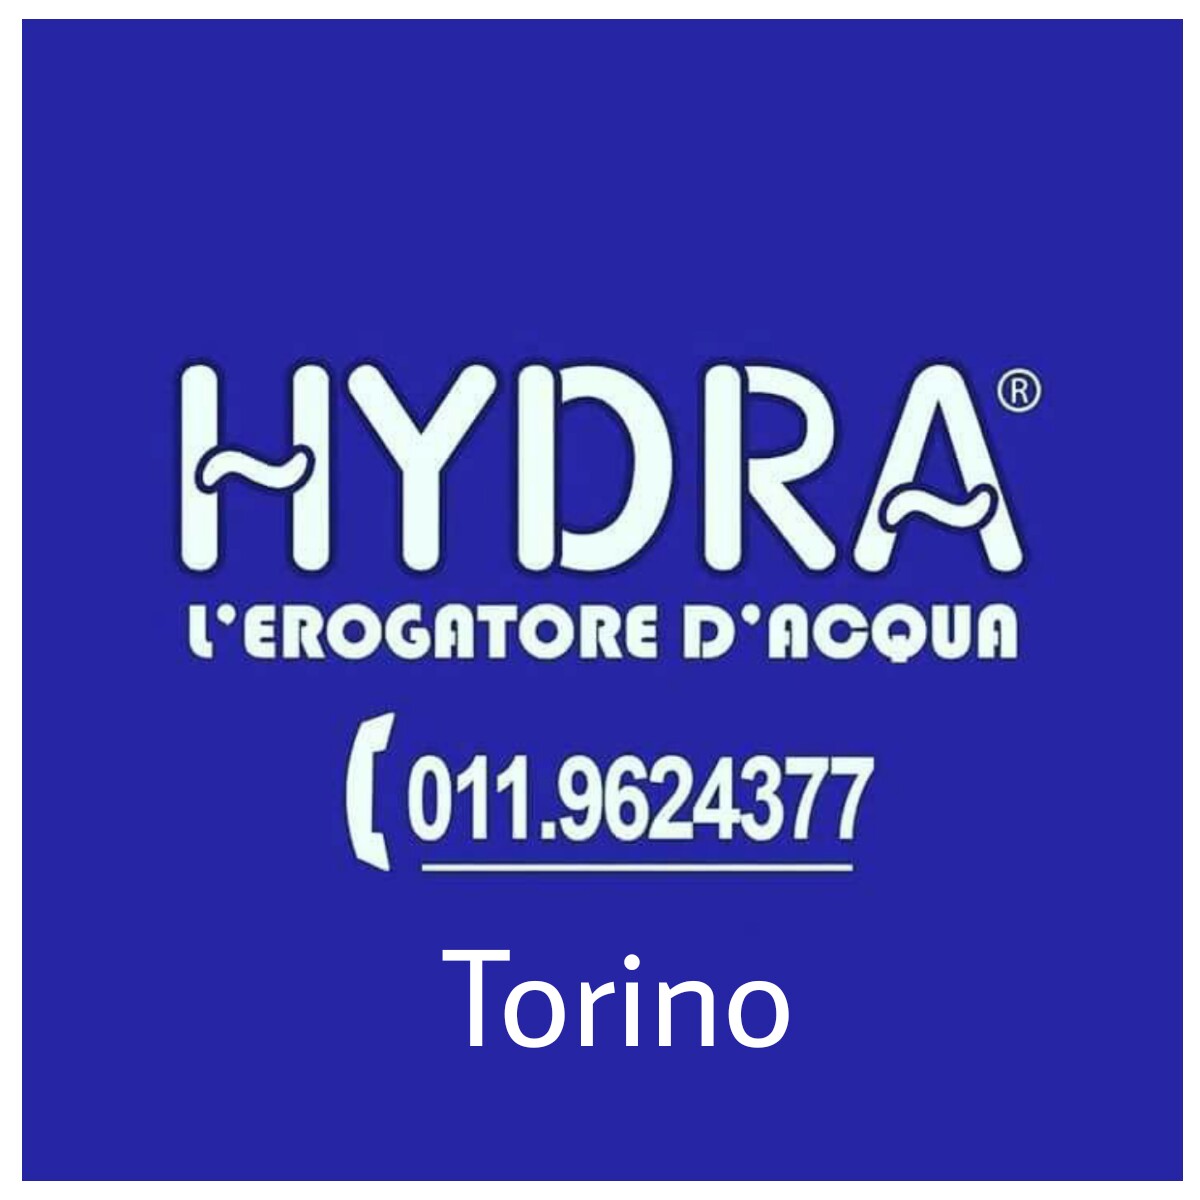 Hydra erogatori d'acqua Torino 